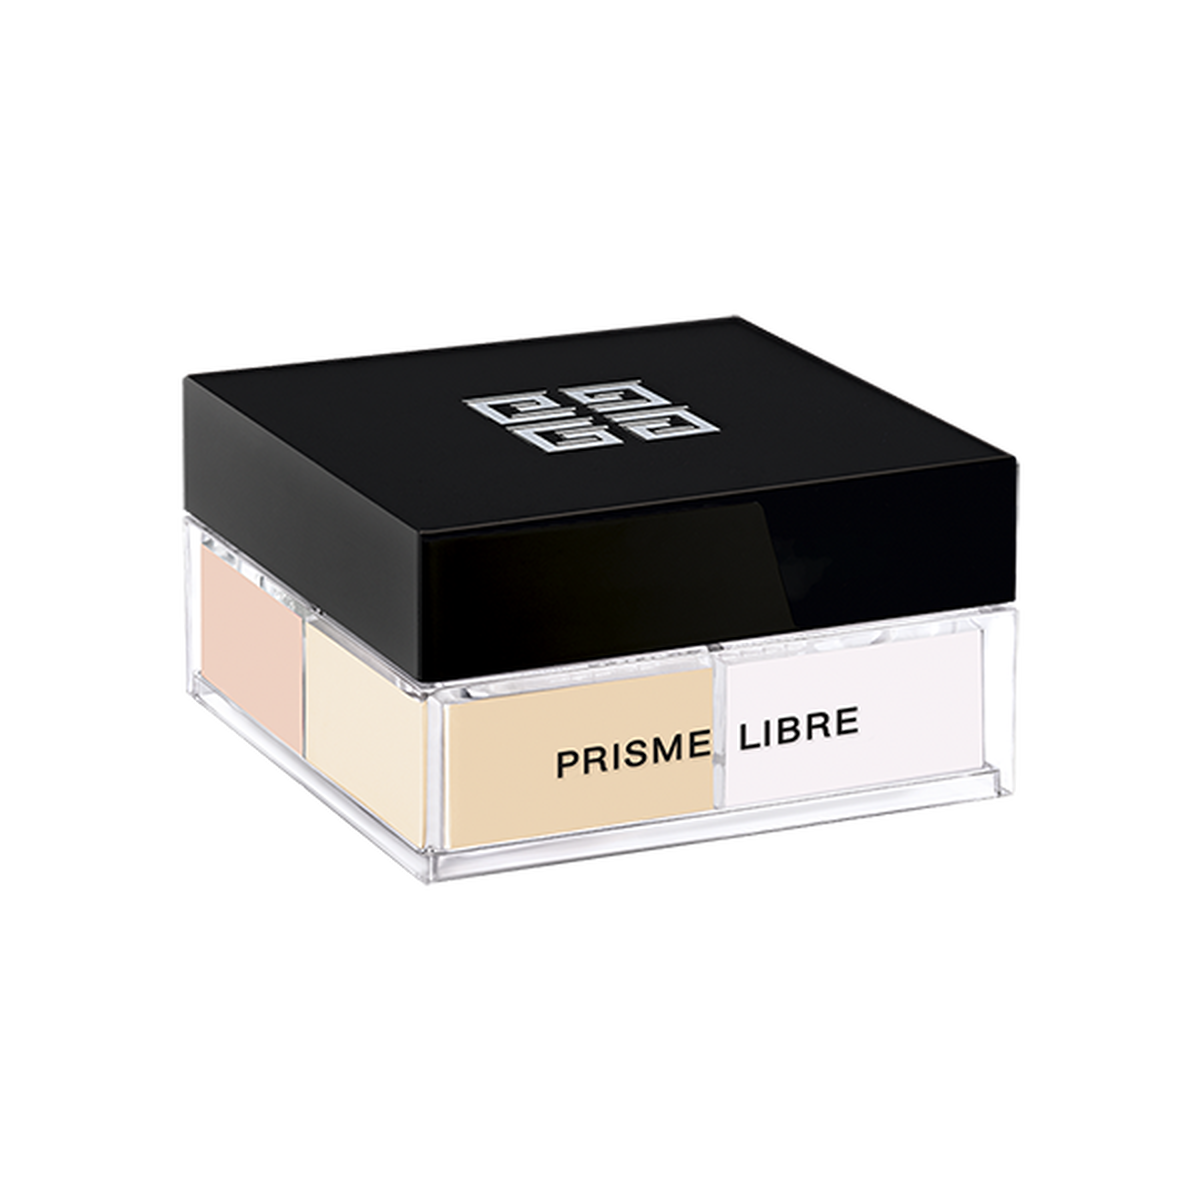 Phấn Phủ GIVENCHY Prisme Libre Mini Loose Powder #N02 Satin Blanc